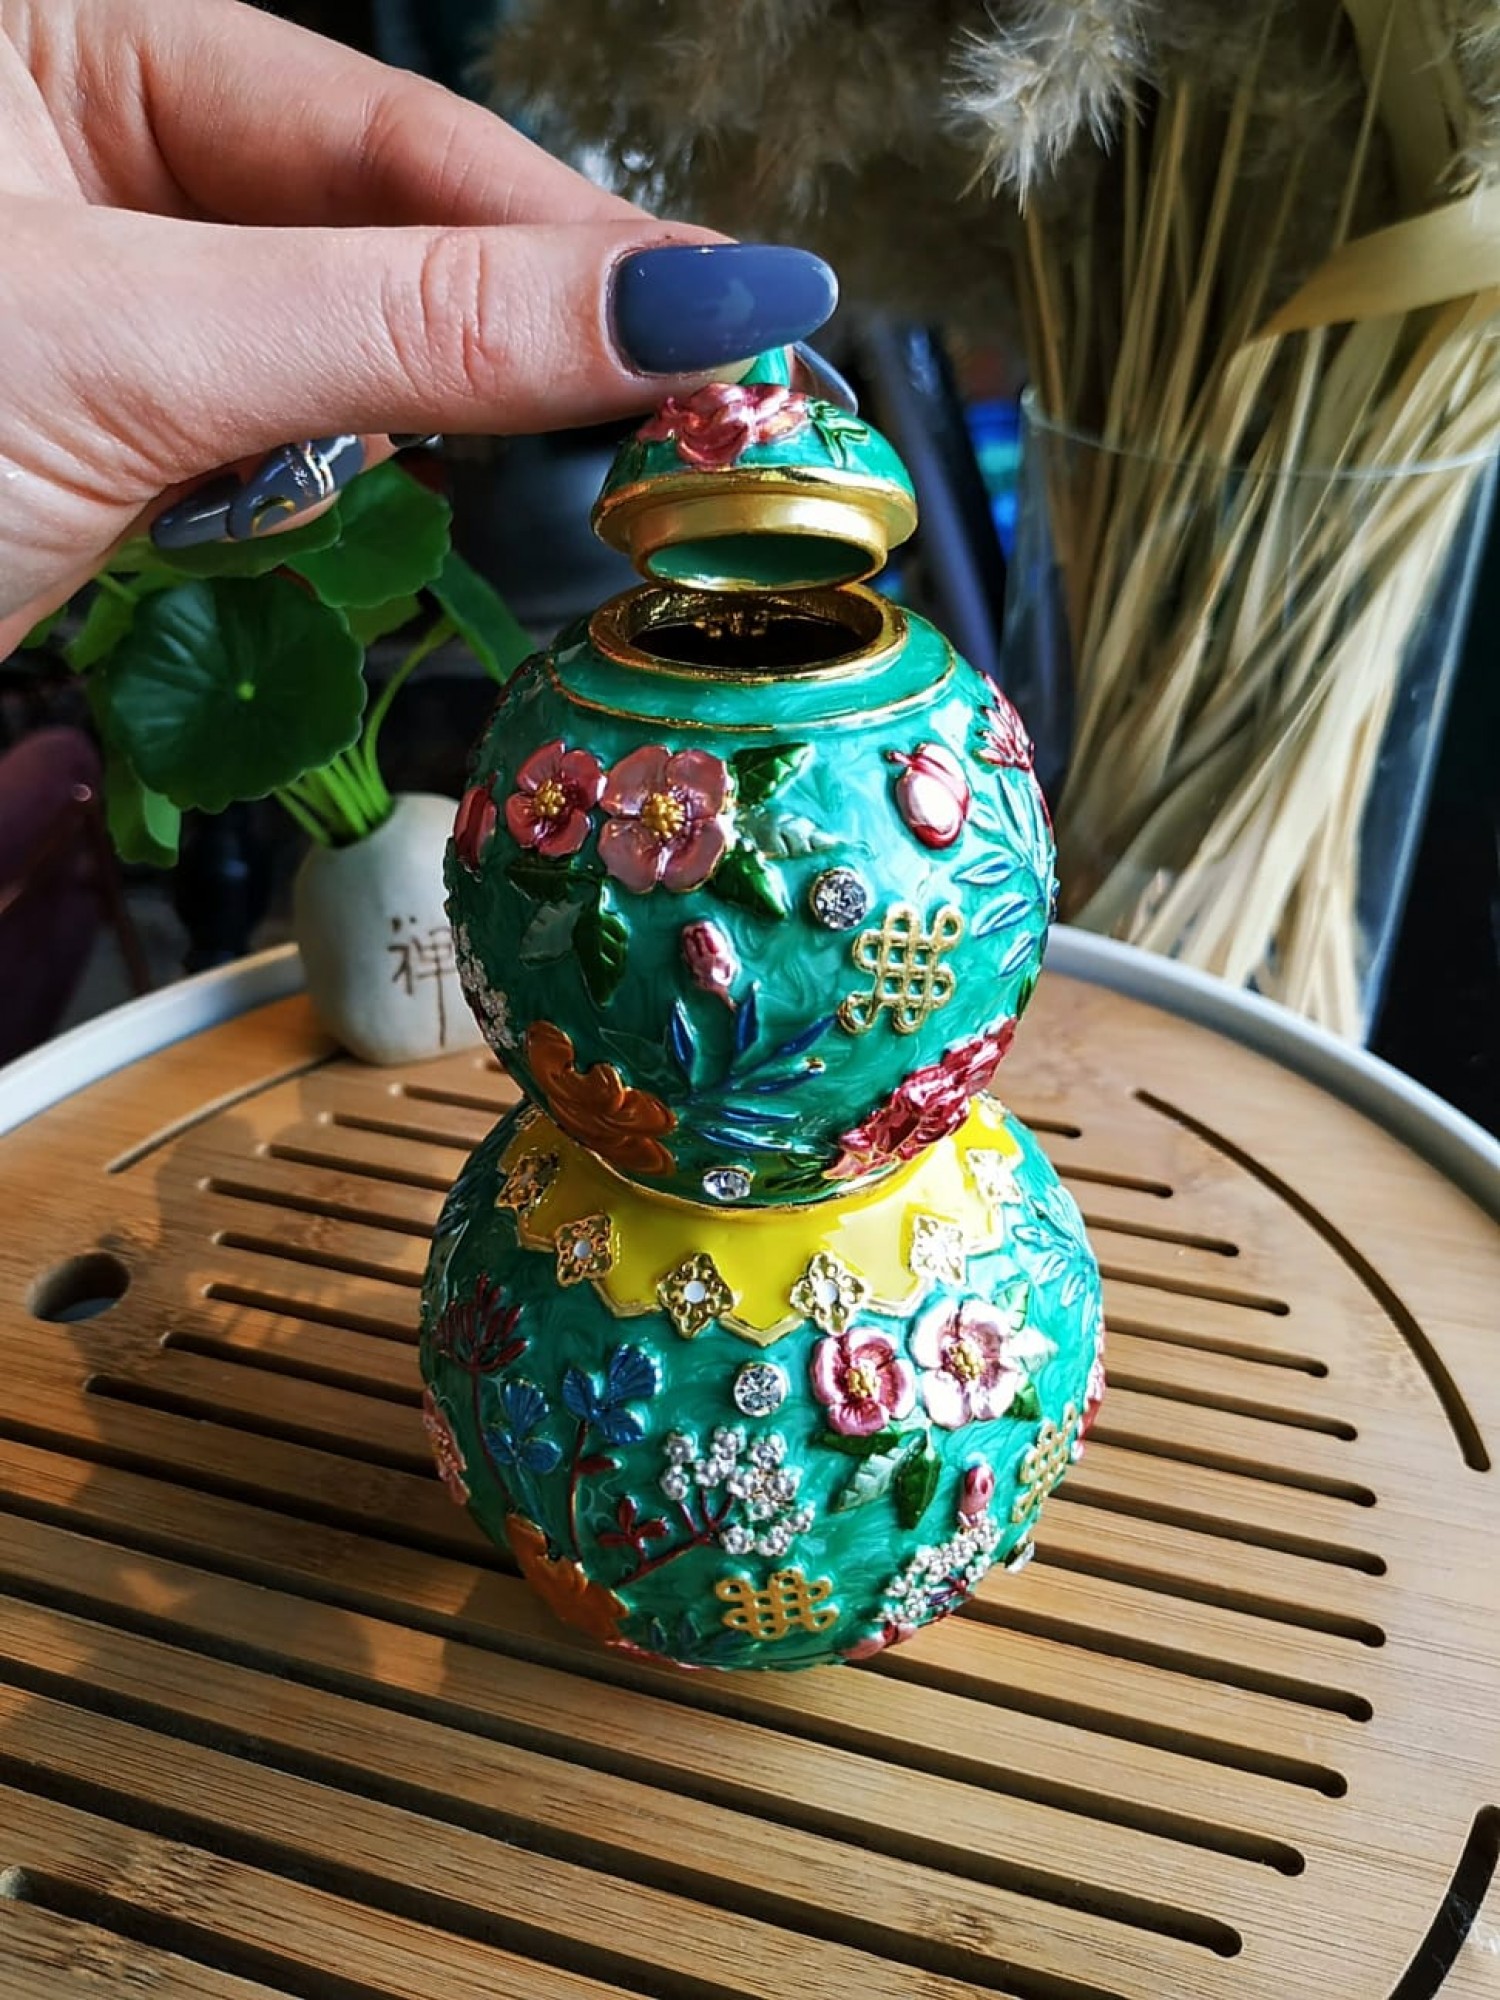 Тыква Улоу бирюза с цветами - главный символ здоровья и долголетия